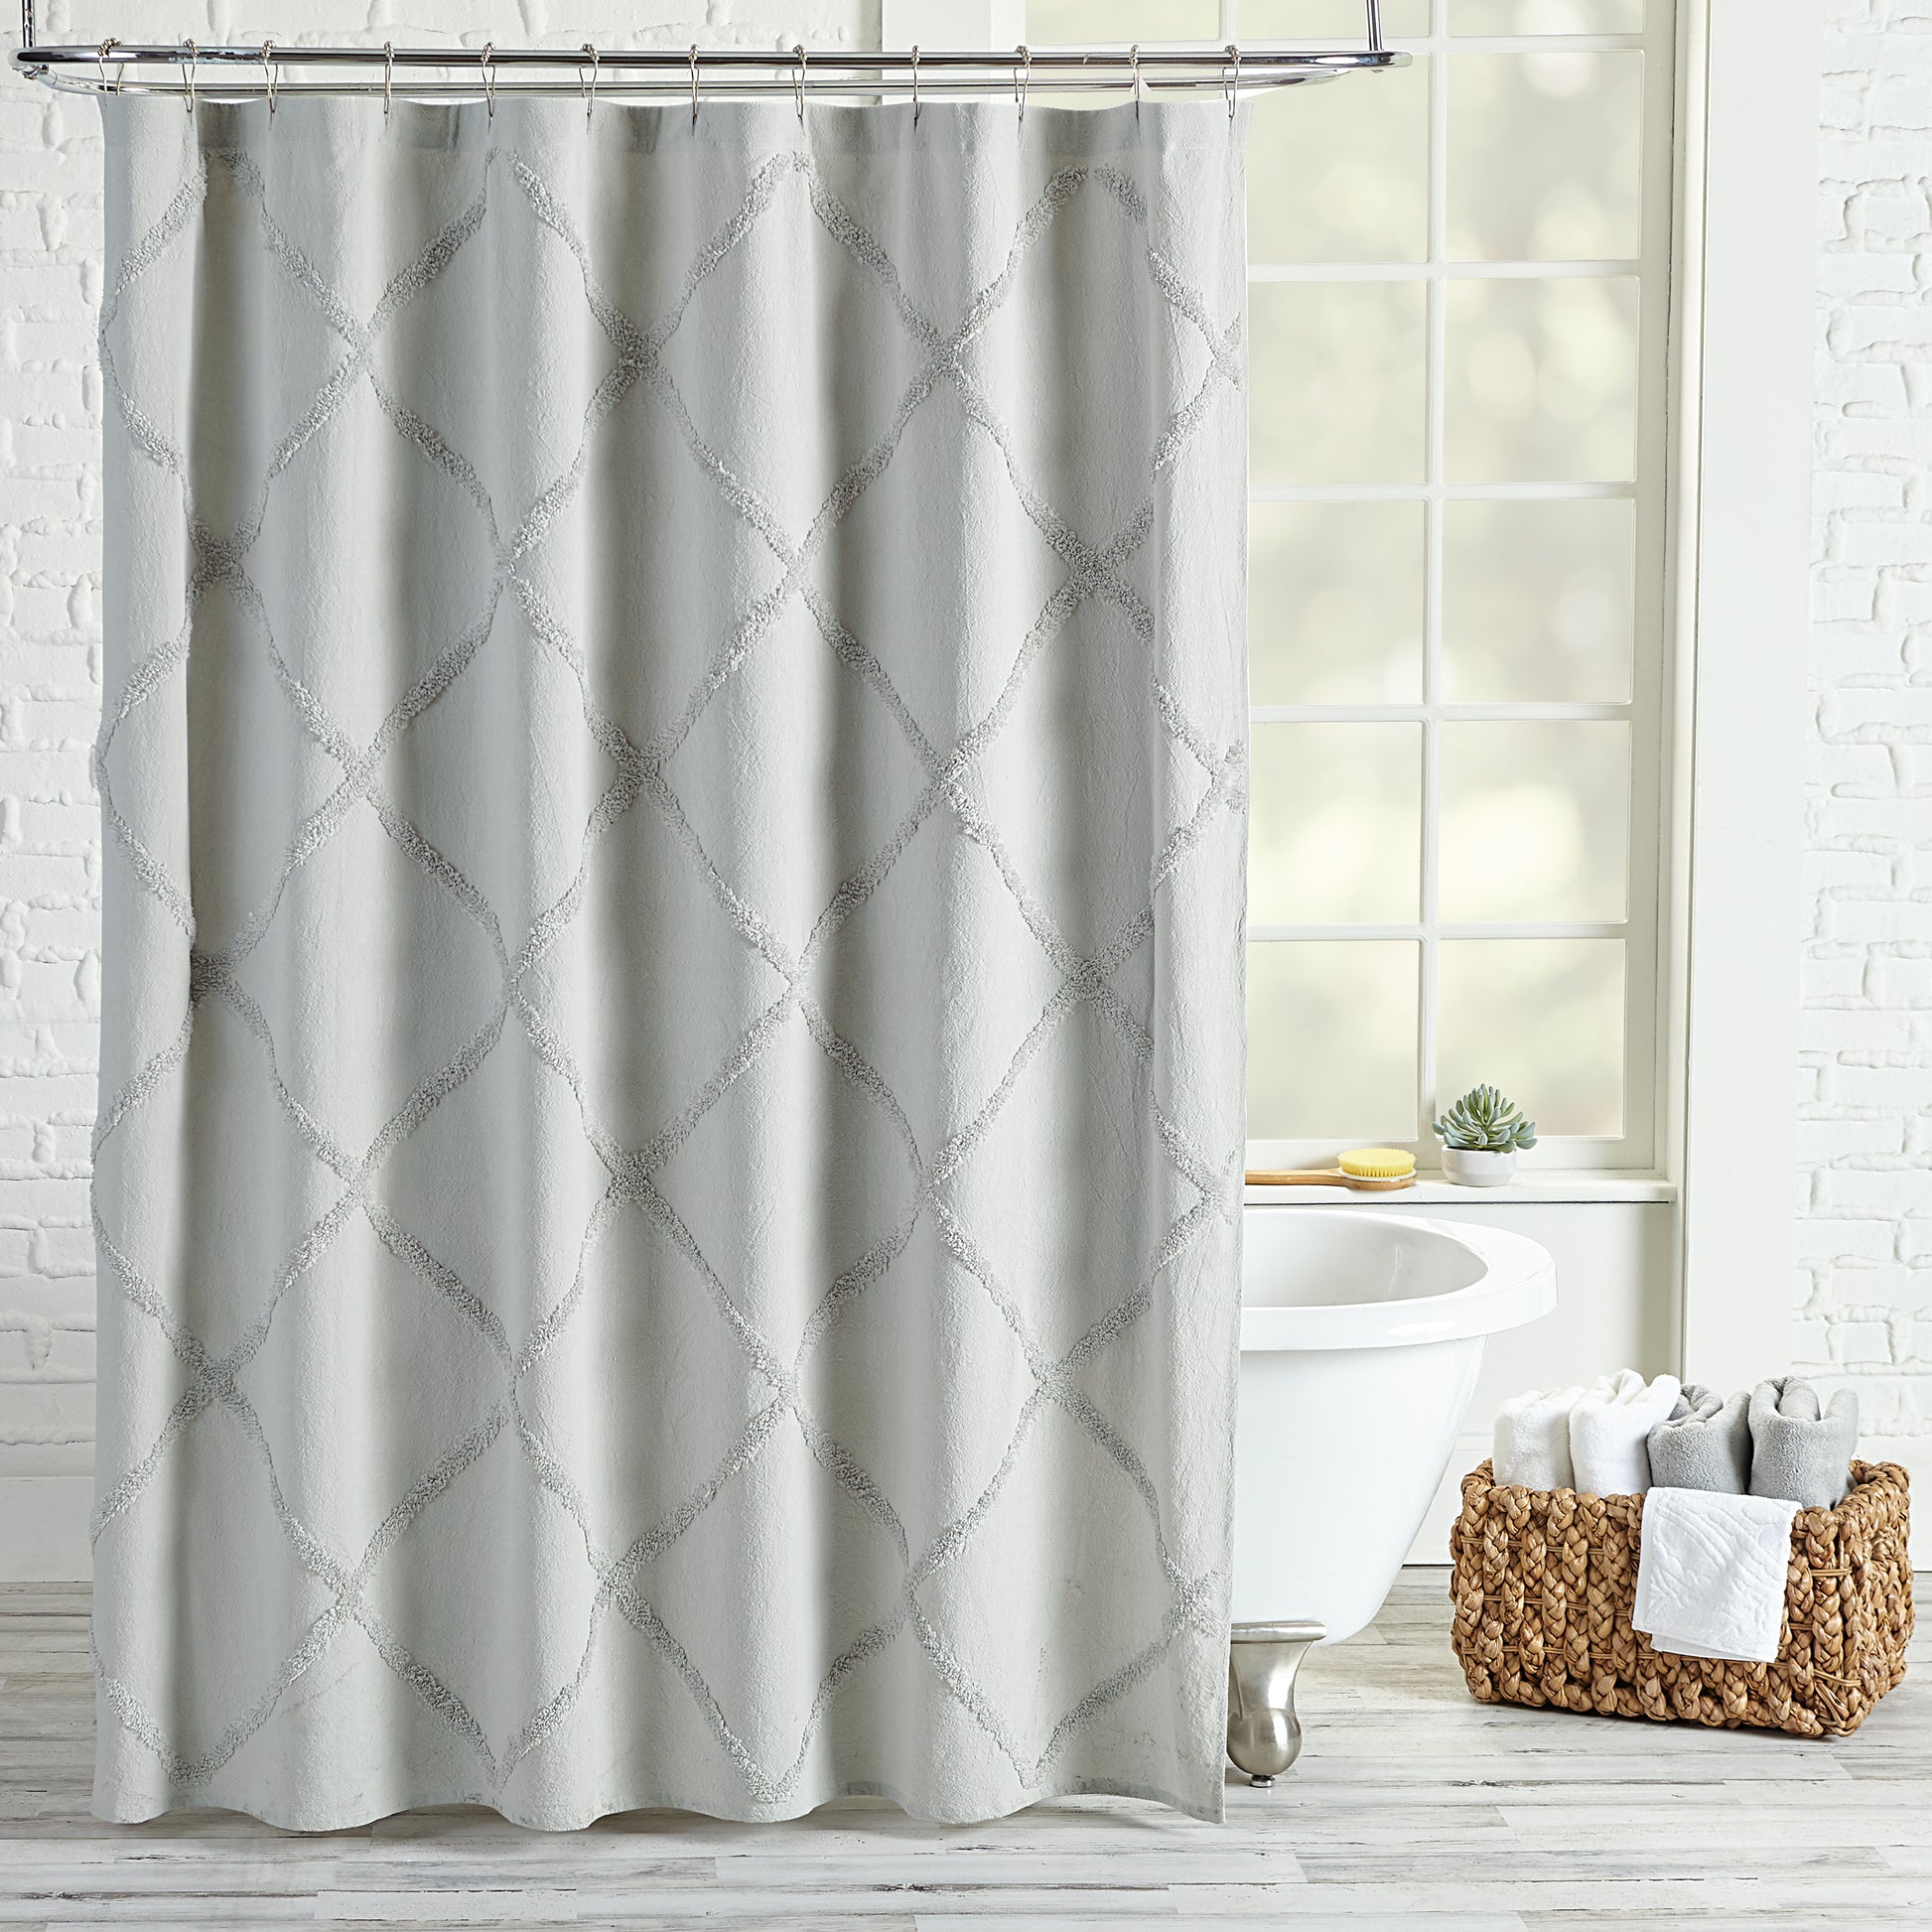 Peri Home Chenille Lattice Shower Curtain grey